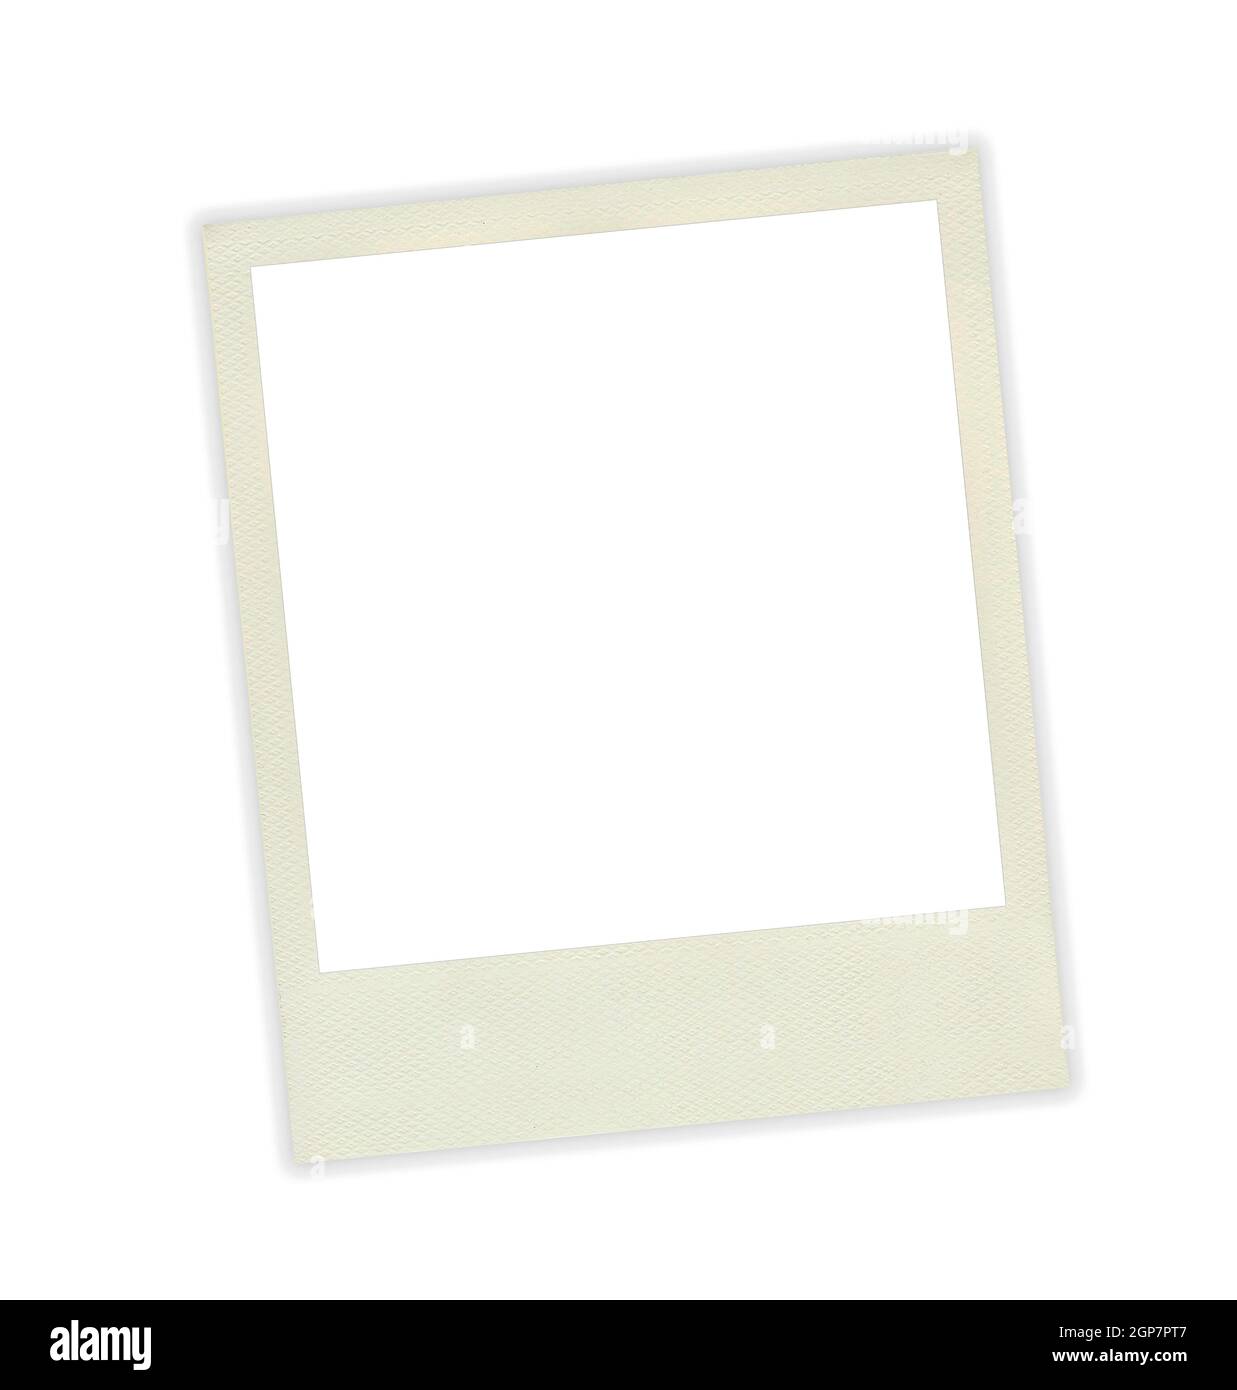 Photo frame polaroid template on white background Stock Photo - Alamy